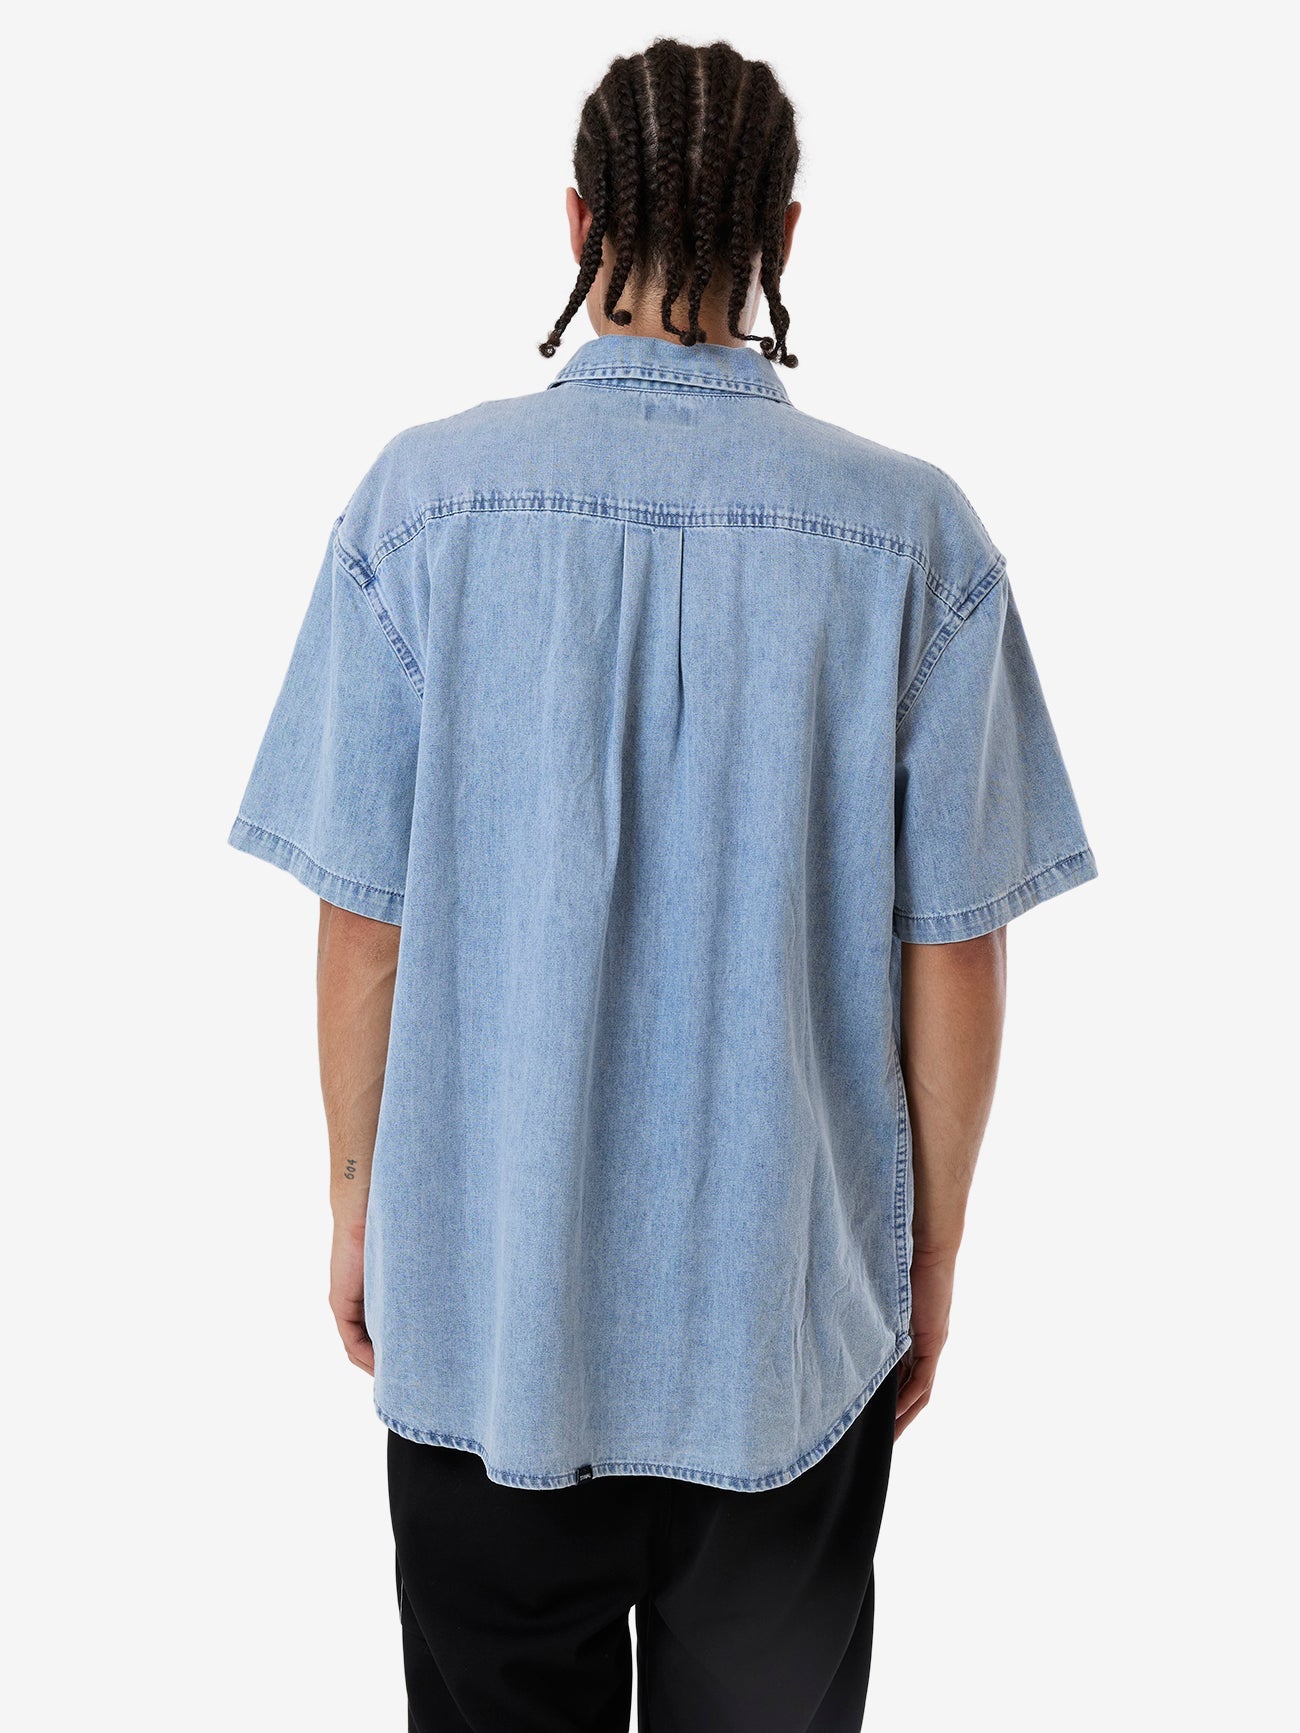 Canyon Oversize Short Sleeve Denim Shirt - Faded Rinse Indigo